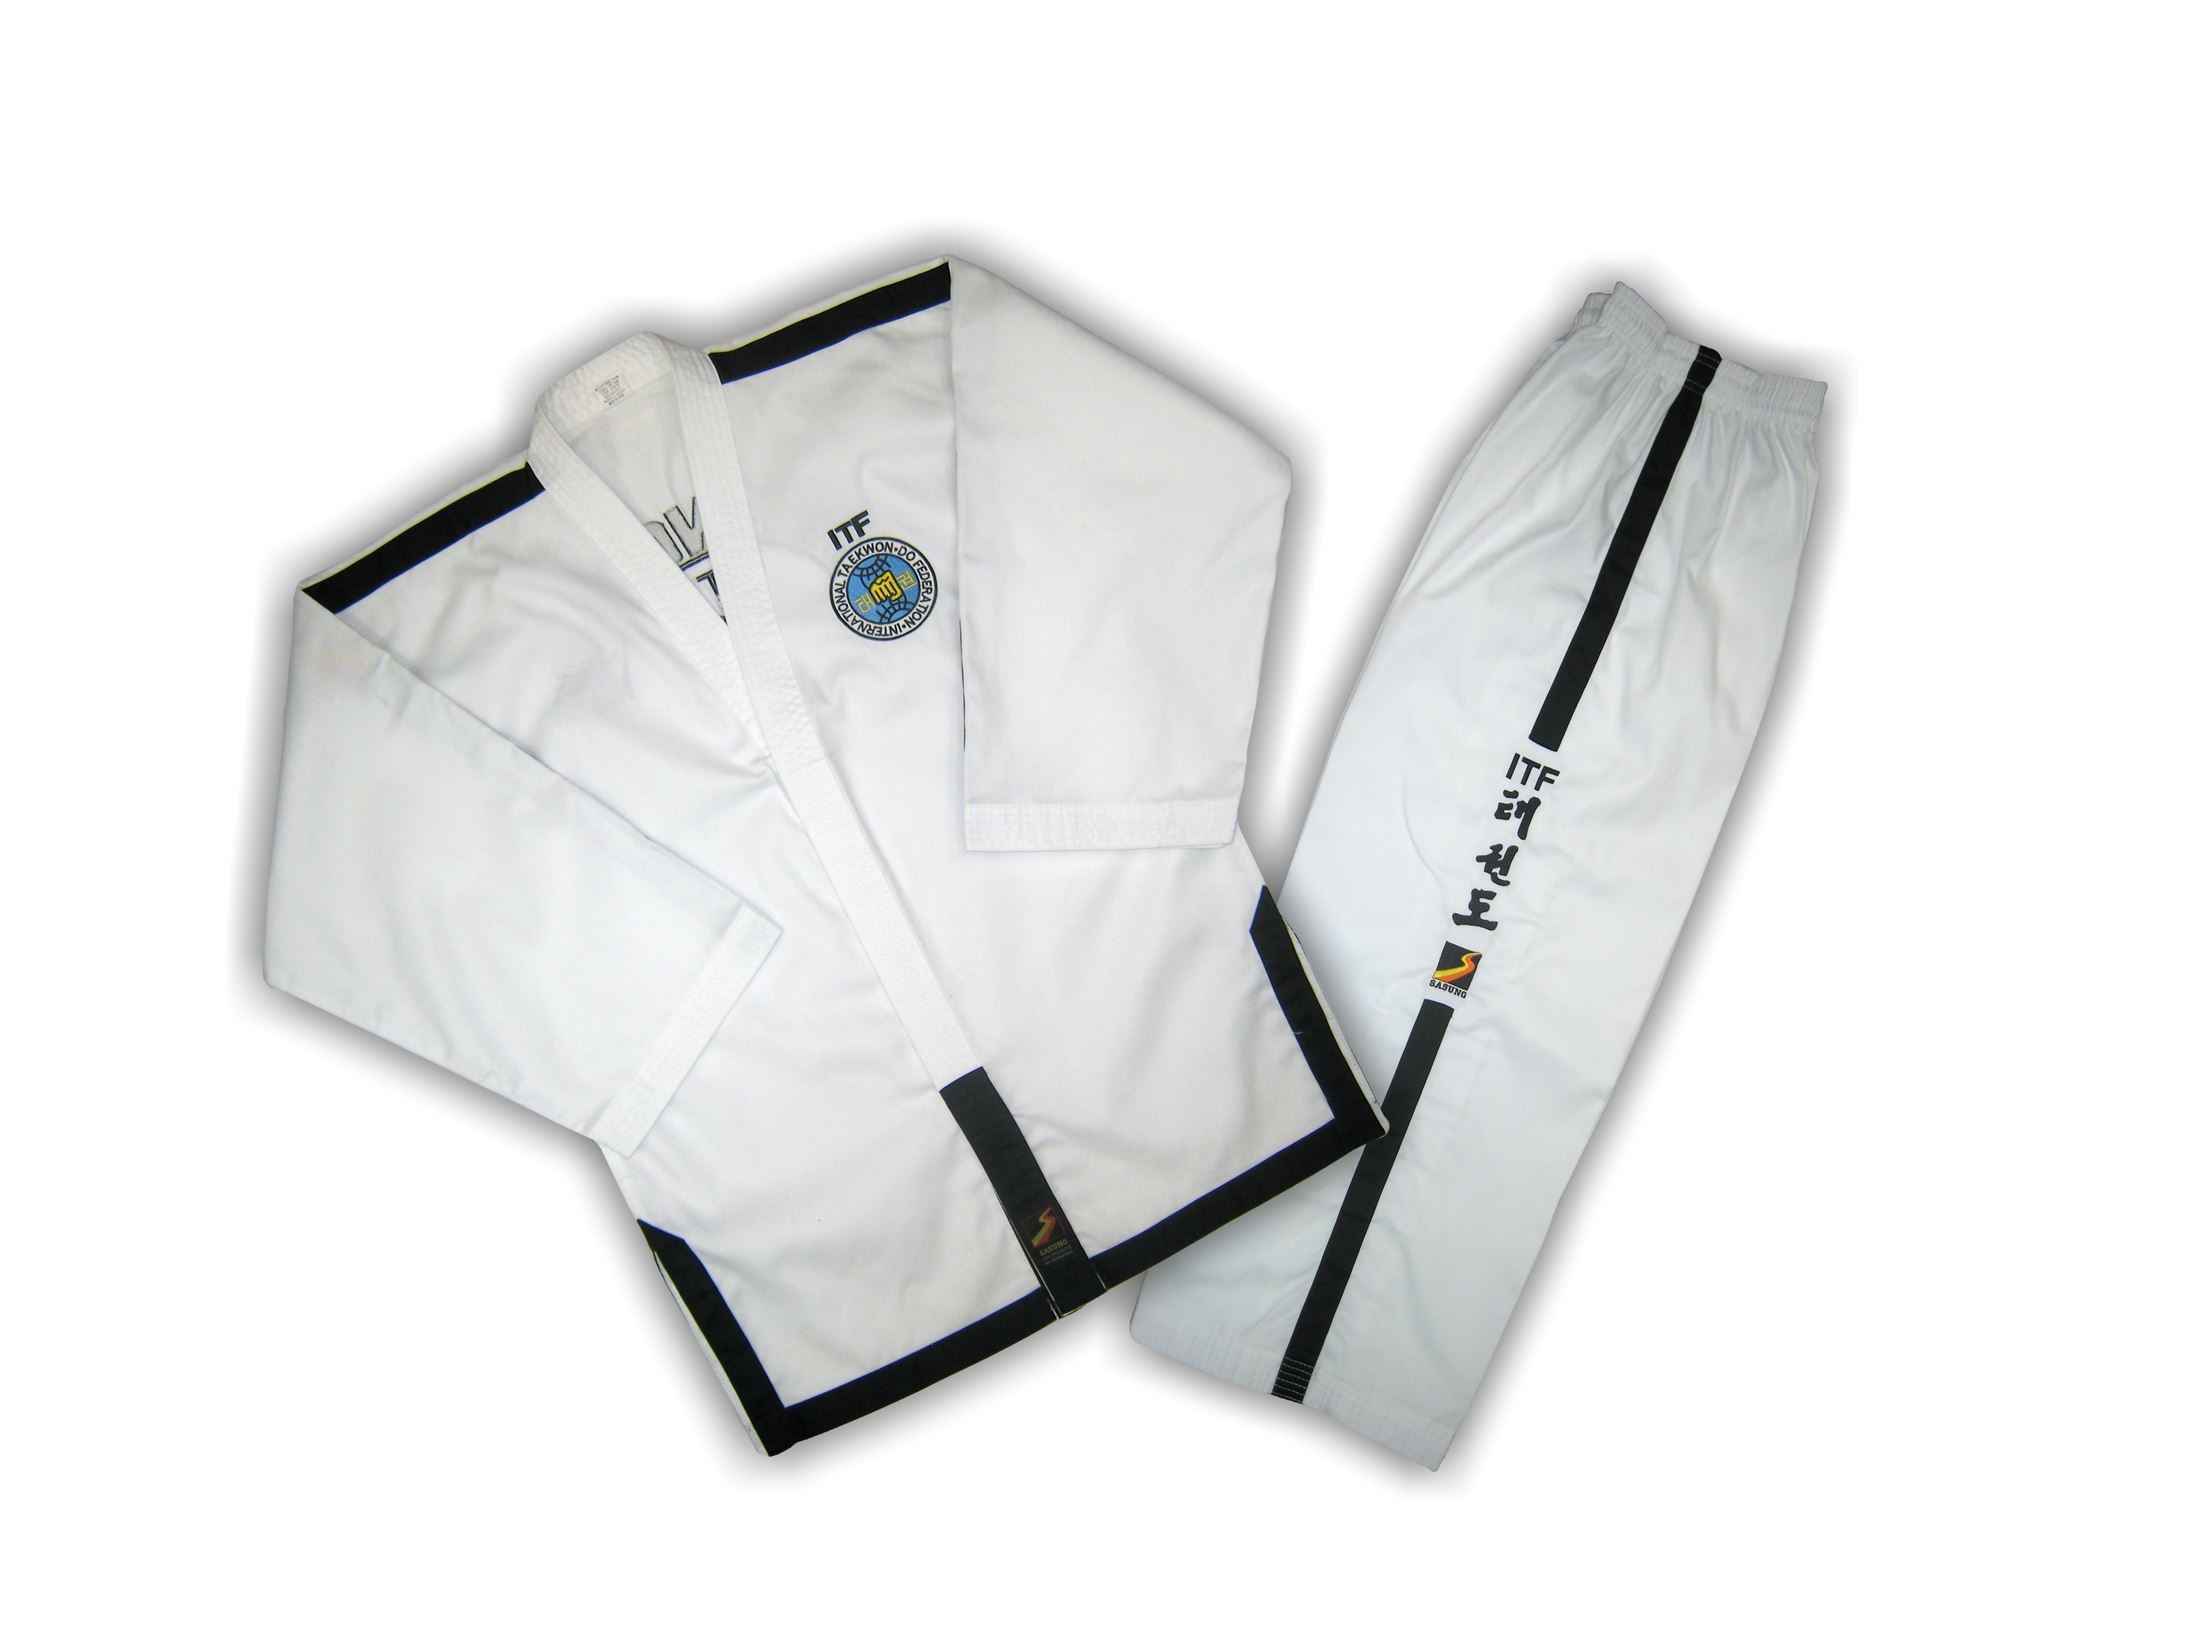 Добок Sasung для Тхэквондо ИТФ,Taekwondo uniform ITF Instructor (тм Sasung)